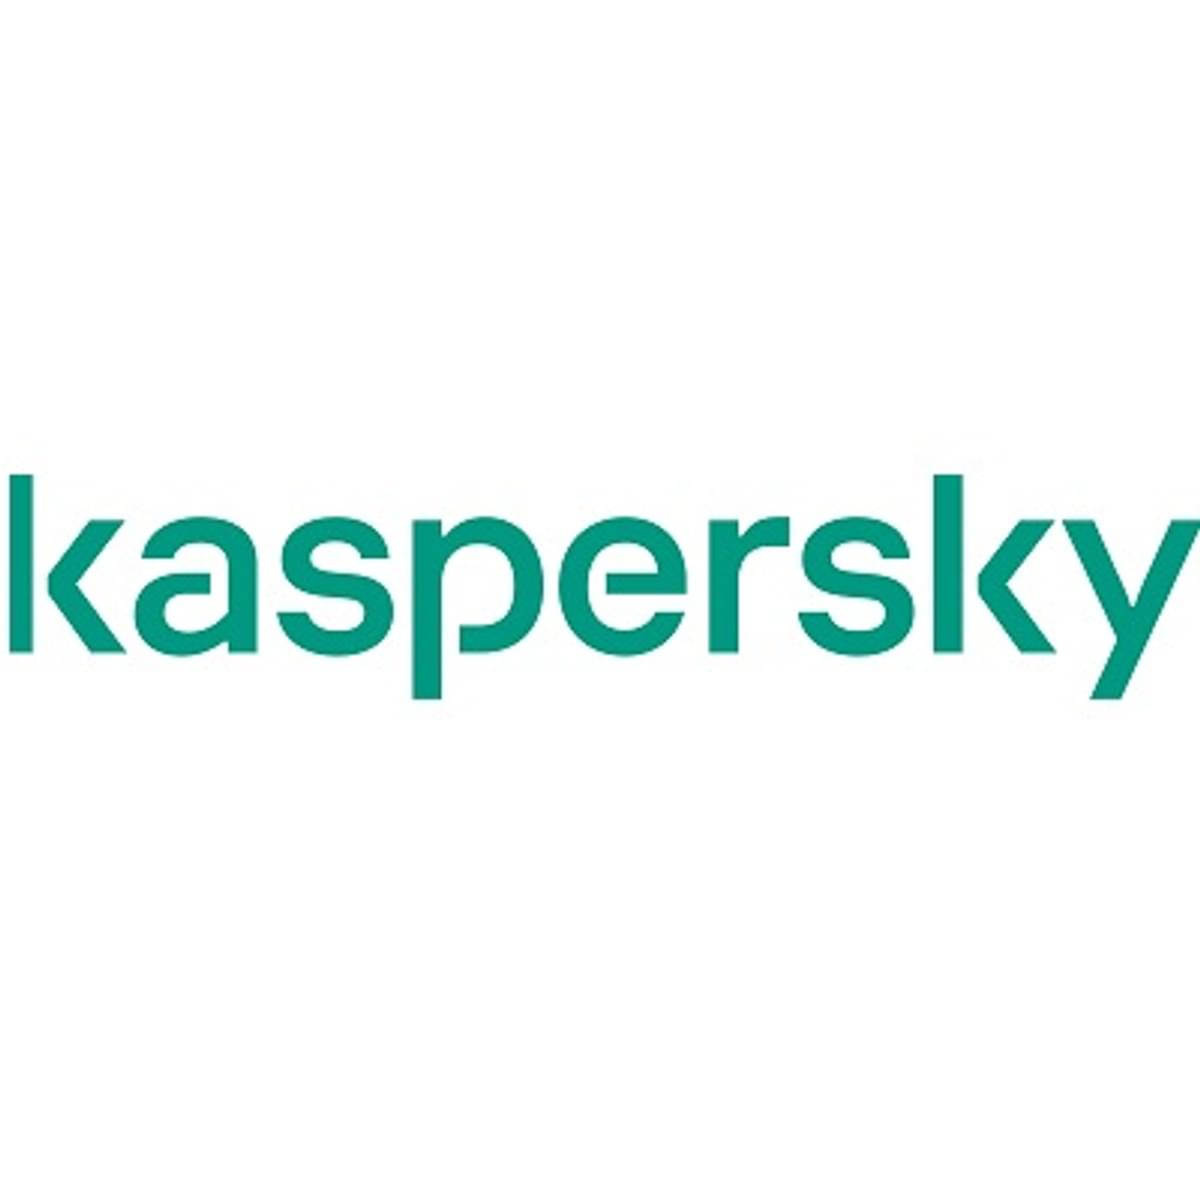 Kaspersky en Endtab.org bieden cursus tegen doxing aan image